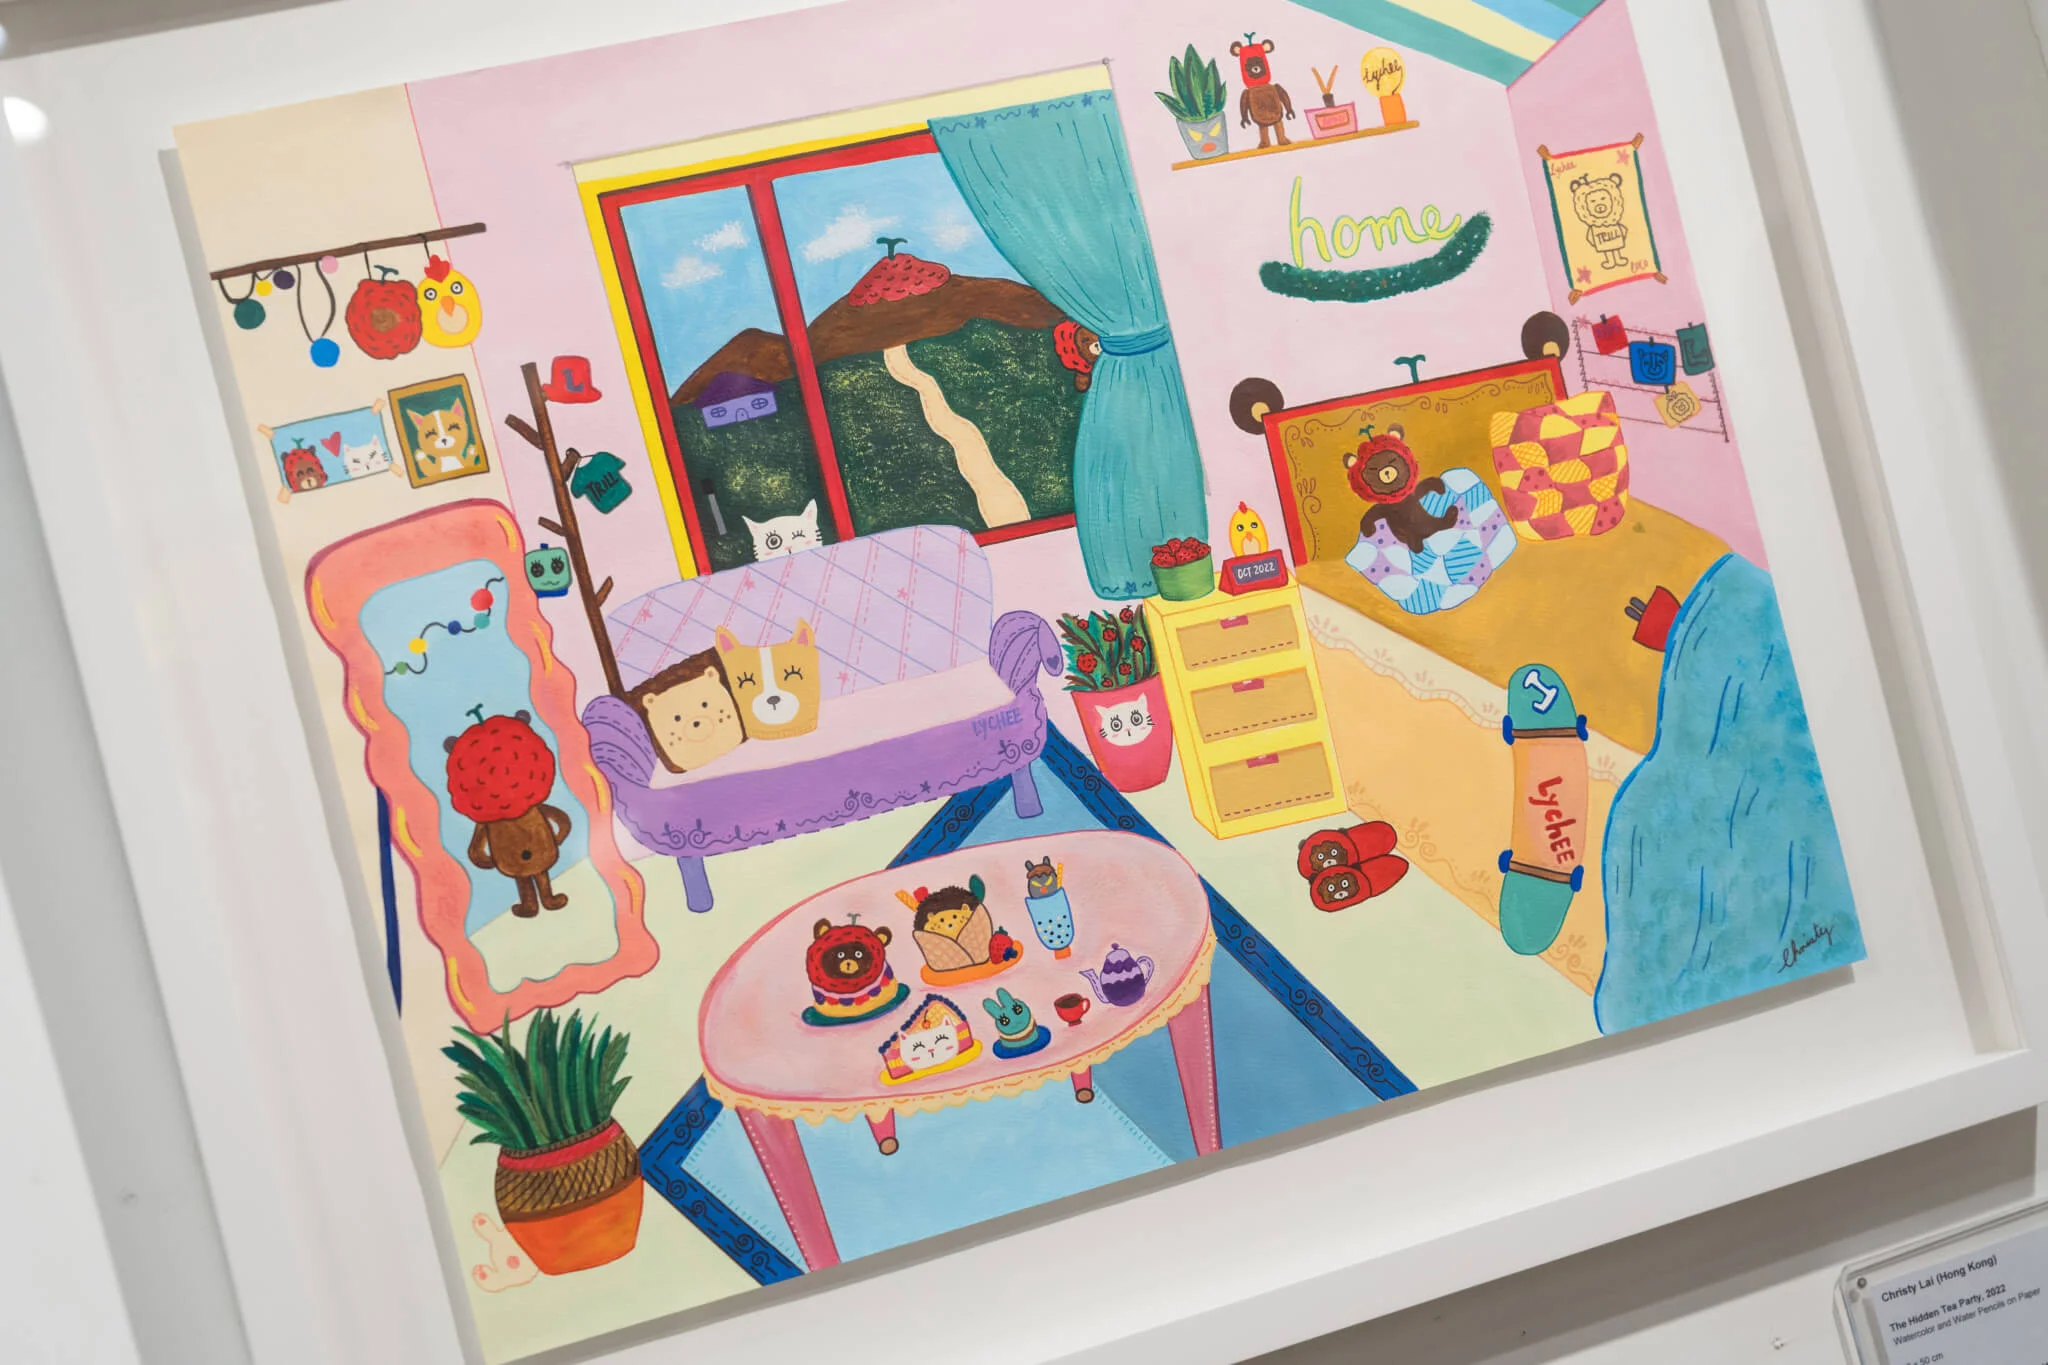 藝人 Christy Lai 黎紀君首次參與畫展創作，以「家」為題描繪一場與身邊好友同享的下午茶派對。